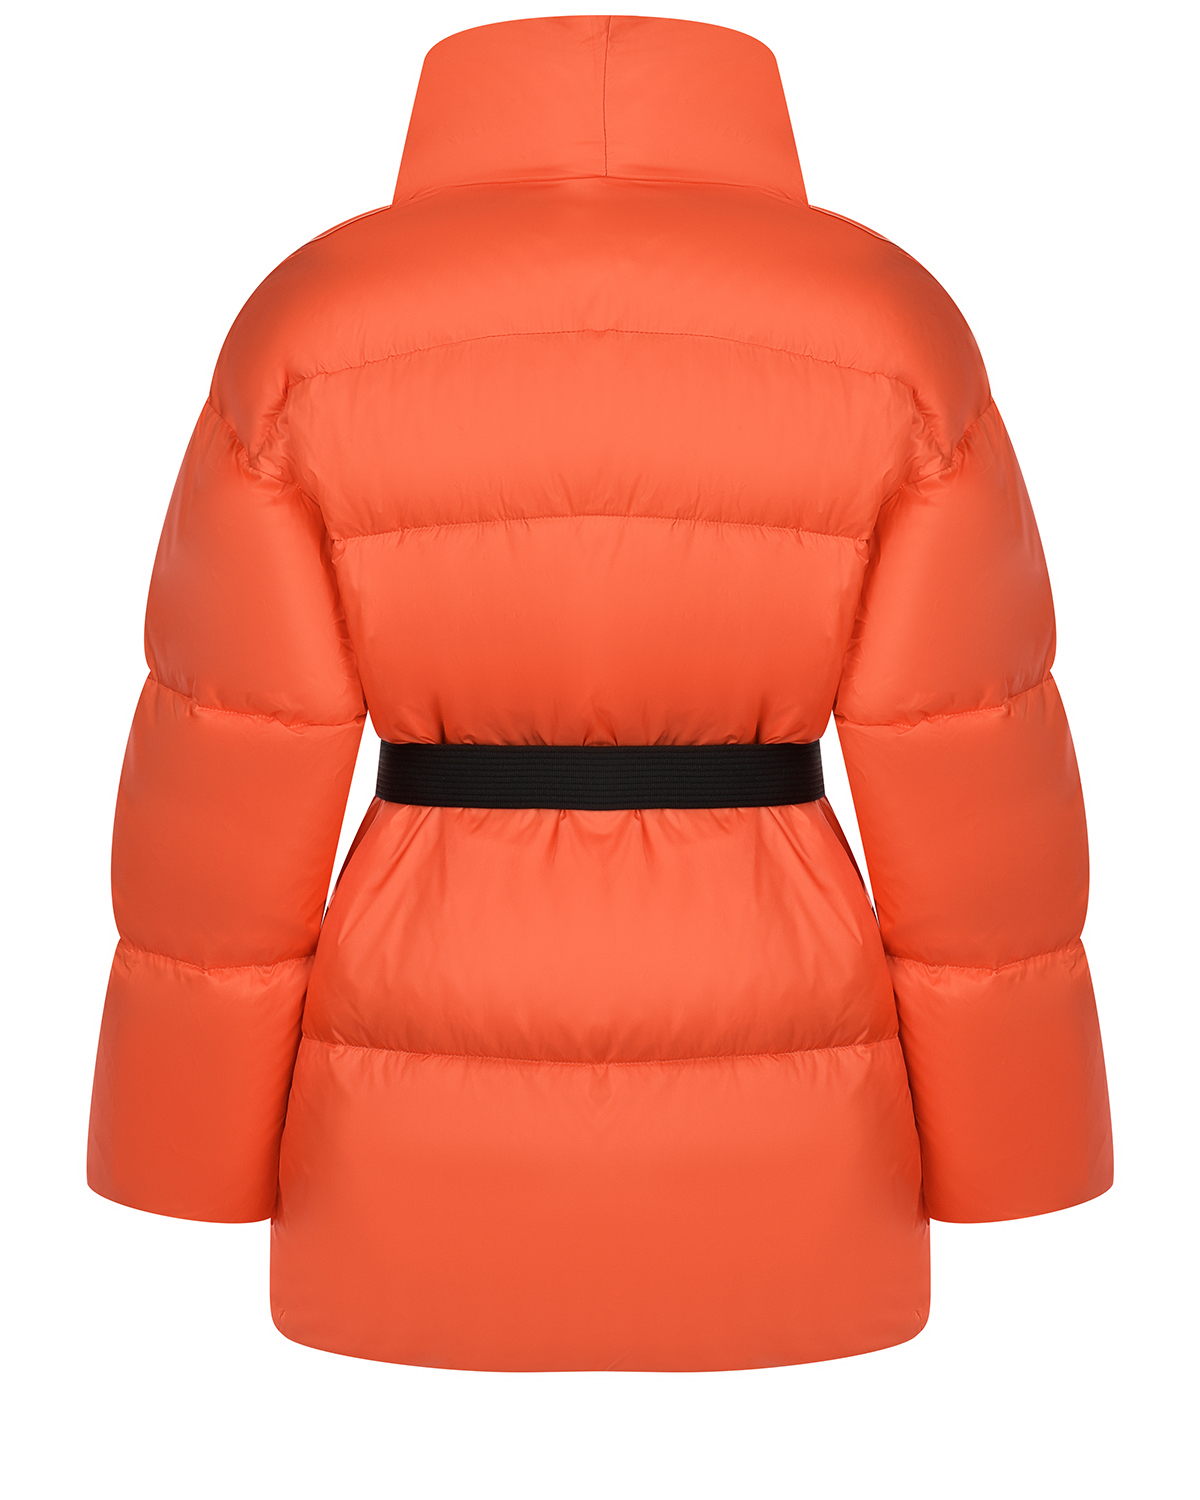 Оранжевая куртка с черным поясом Naumi, размер 36, цвет оранжевый - фото 9